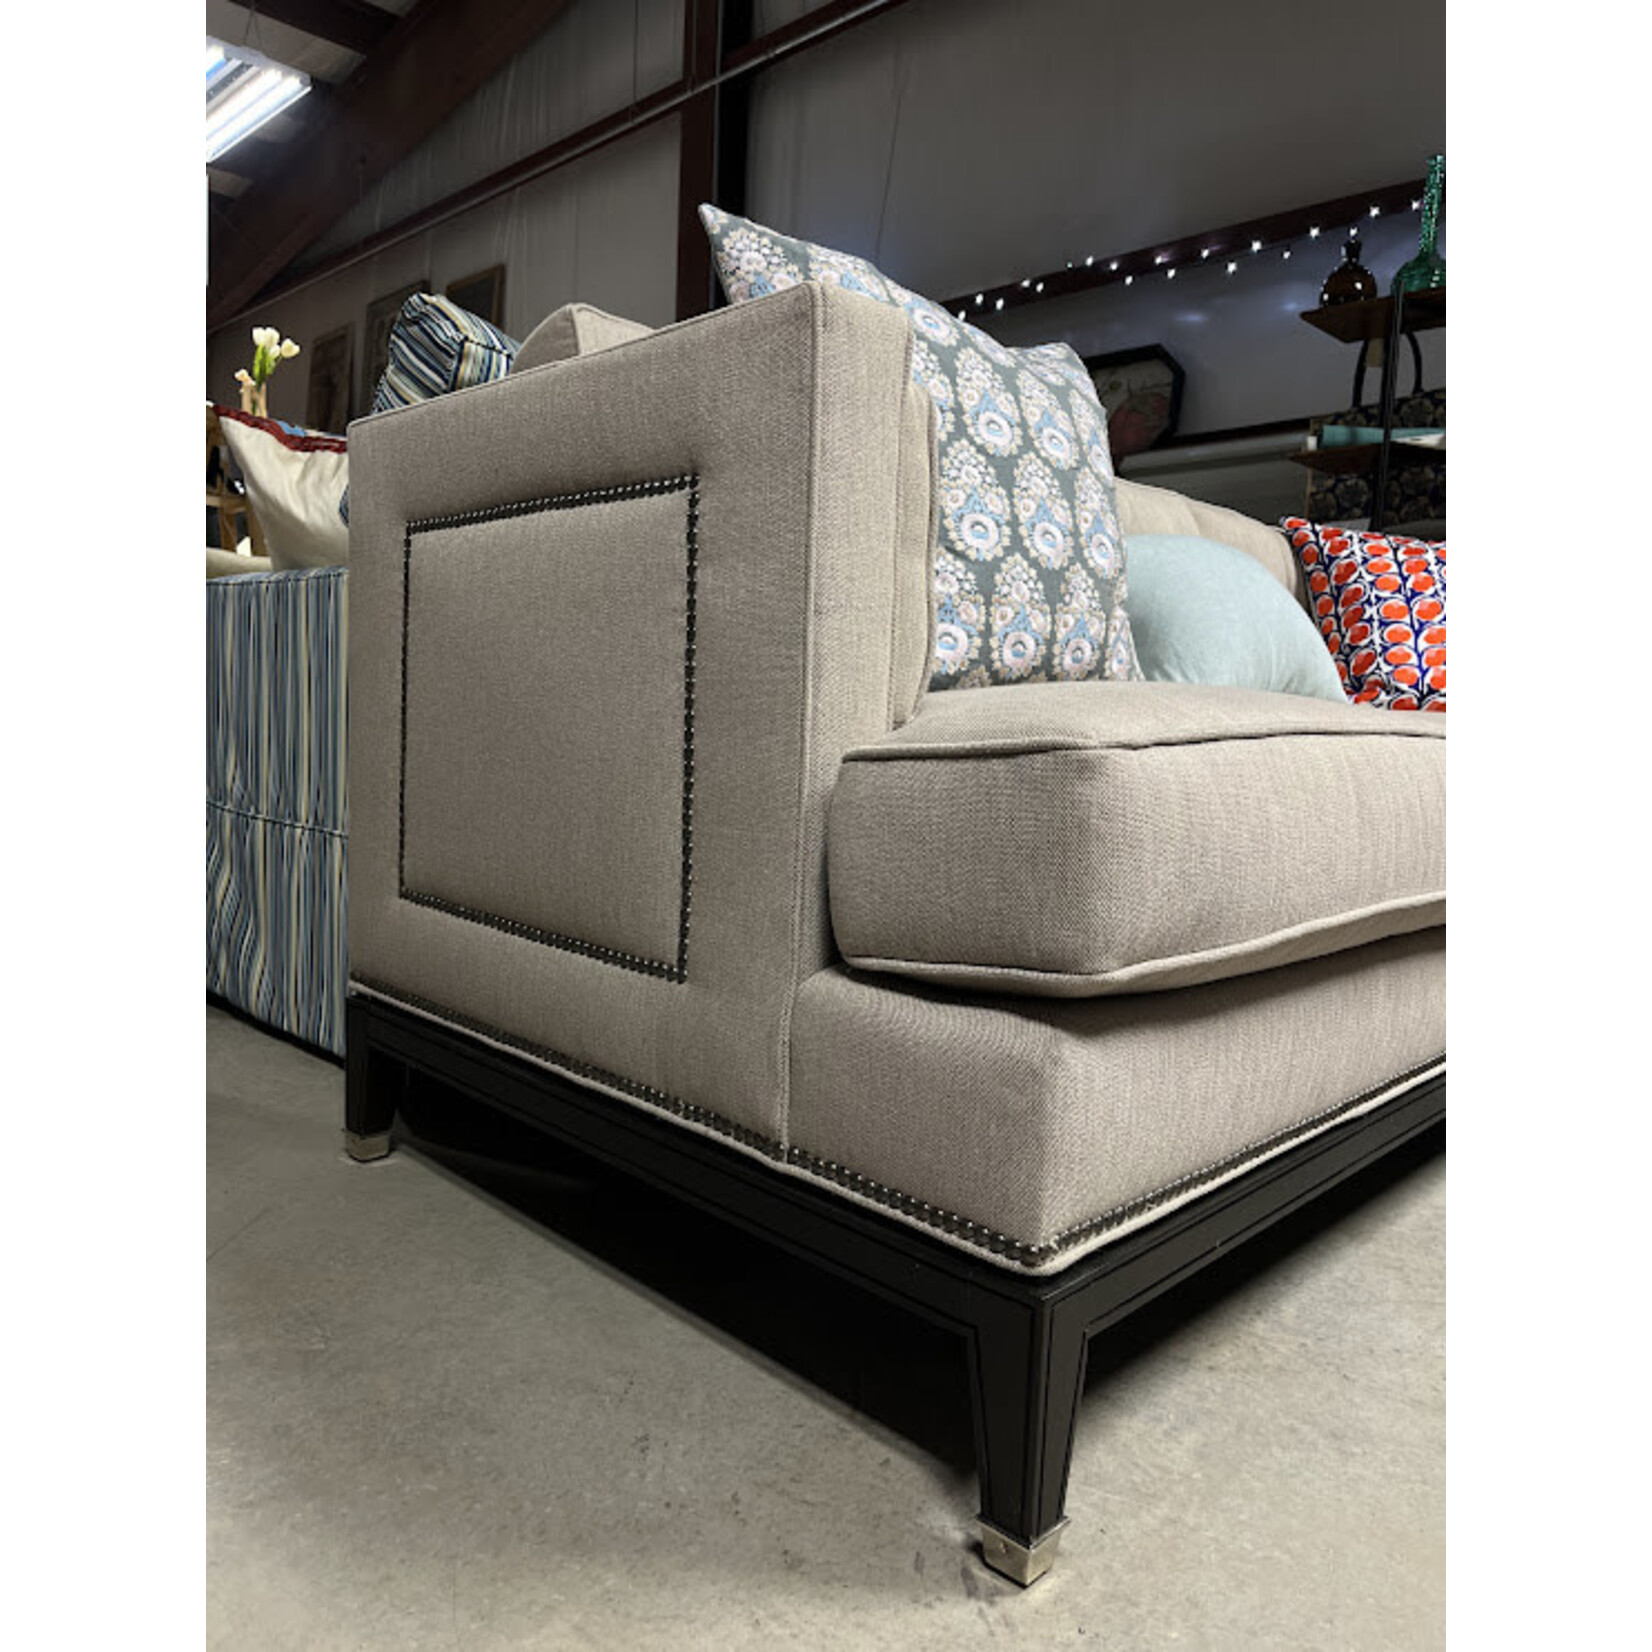 Vanguard Furniture 3 Cushion Sofa Wheat with Nailhead Detail